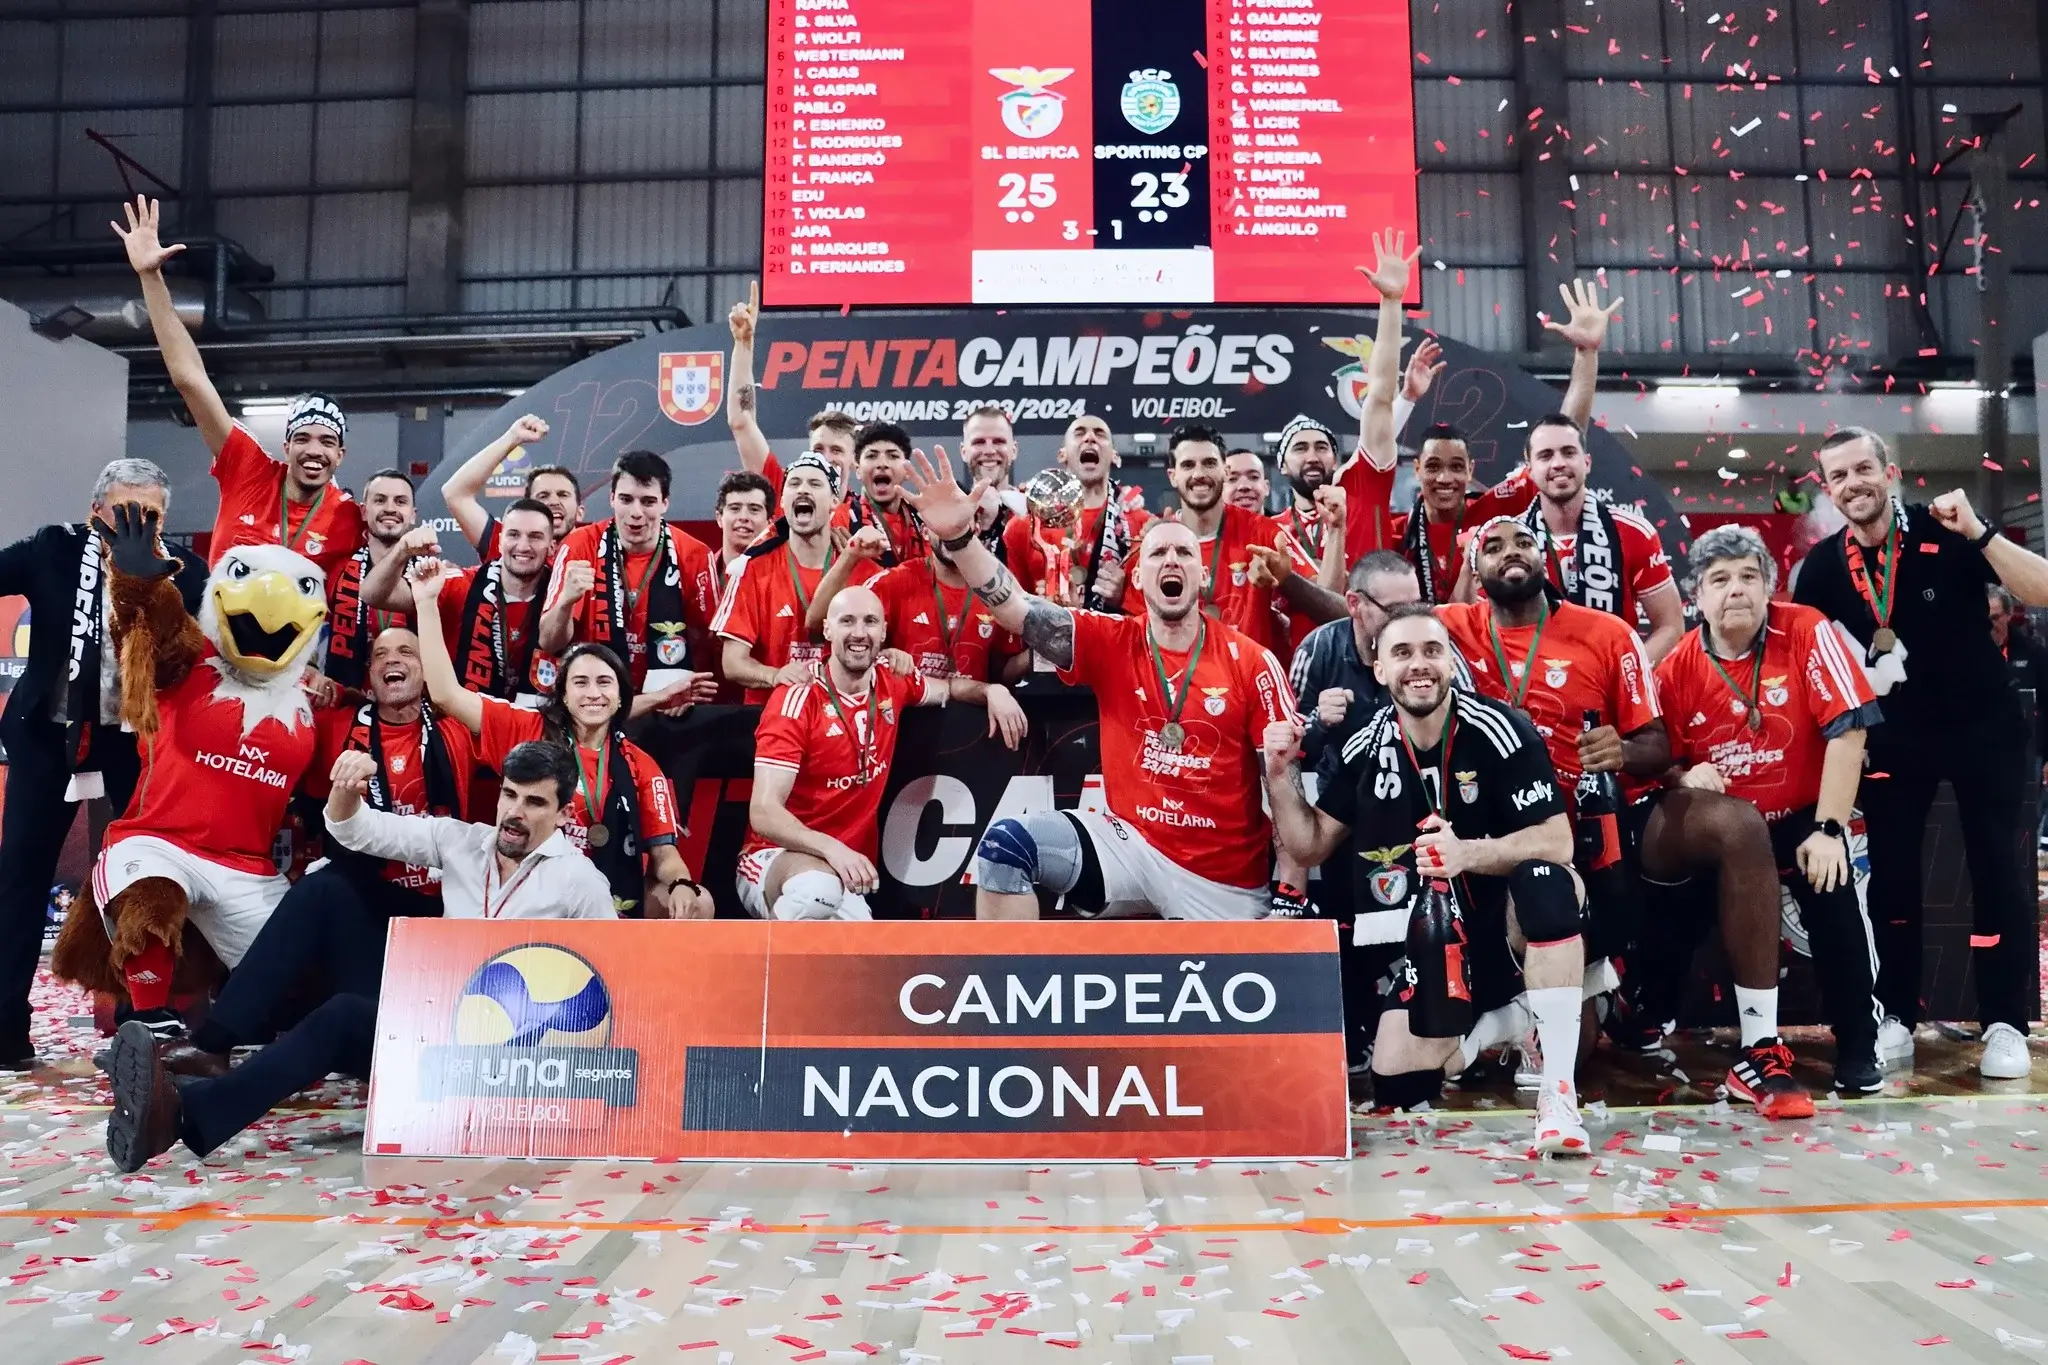 Benfica Üst Üste 5.Yıl Portekiz Erkekler Ligi Şampiyonu Oldu